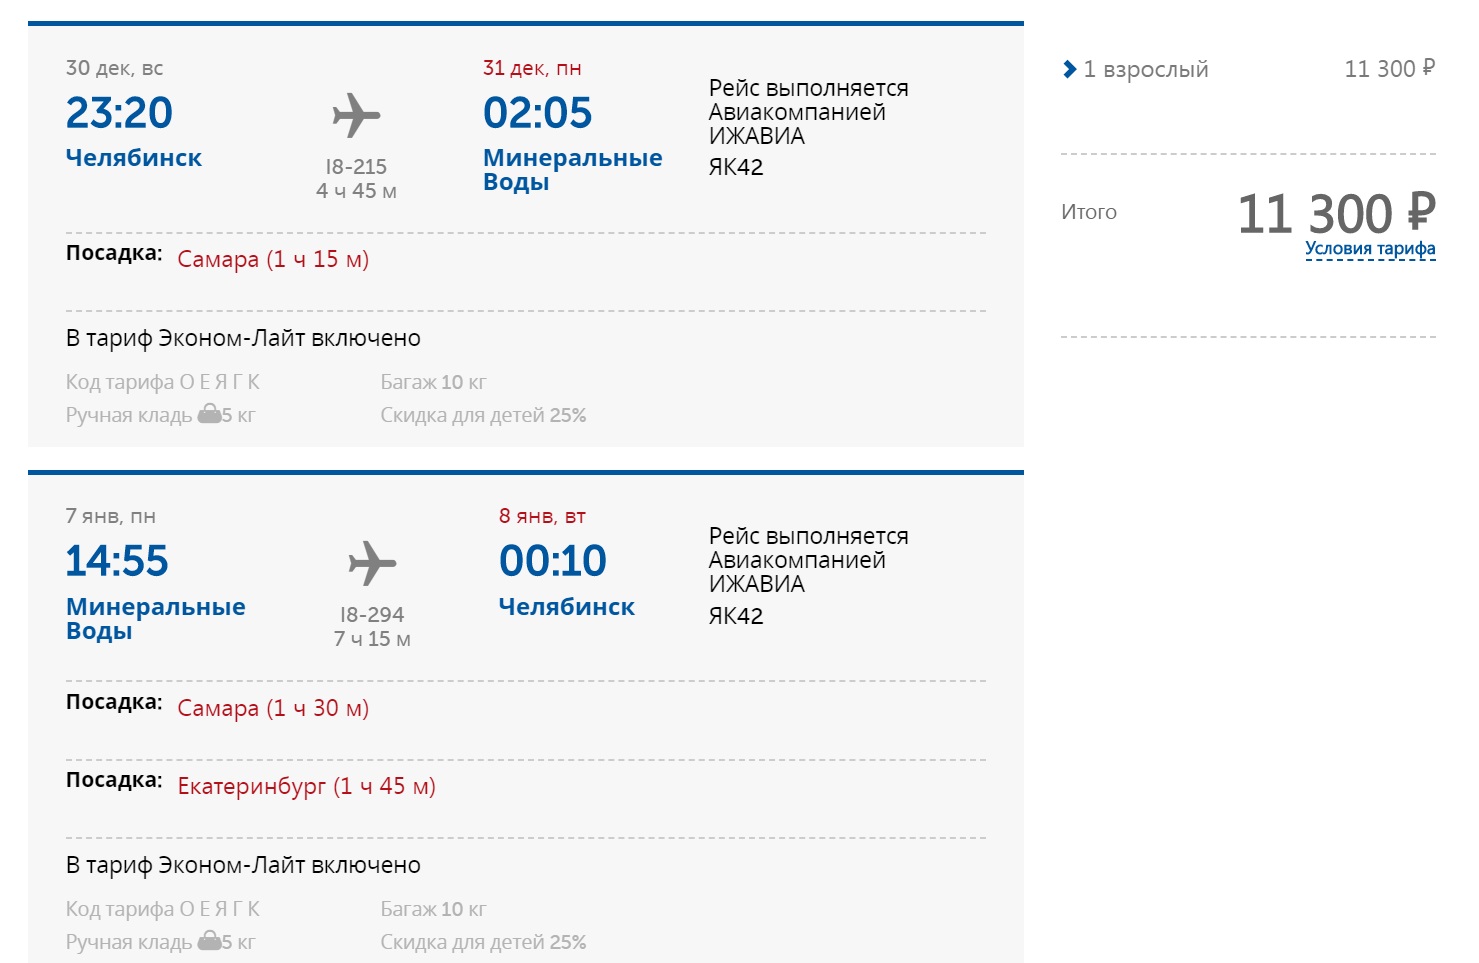 Самара минеральные воды купить билет на самолет авиабилеты в грецию из финляндии